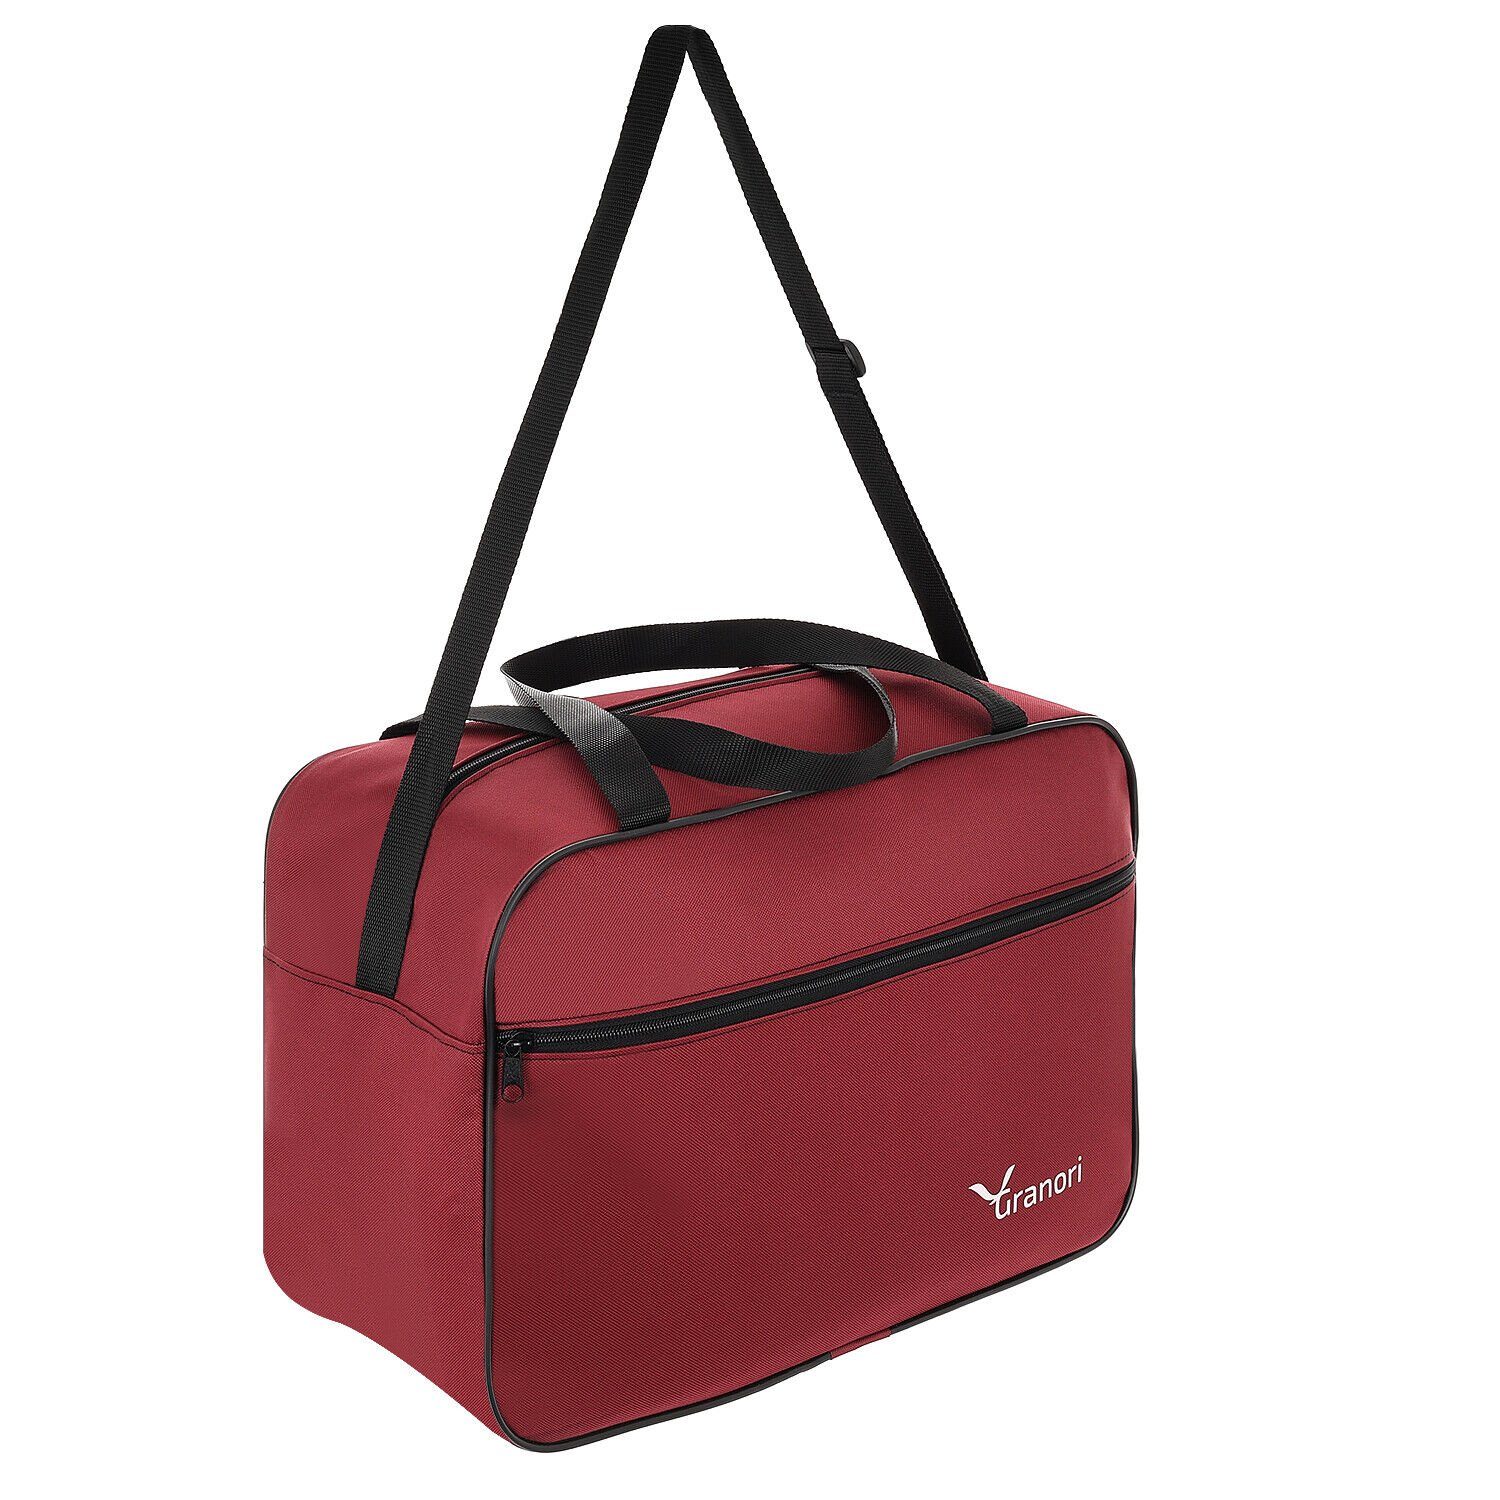 Granori Reisetasche 40x30x20 cm leichtes Flugzeug Handgepäck 24 l mit Aufsteckfunktion, platzsparend, mit geräumigem Hauptfach und verstellbarem Schultergurt Rot